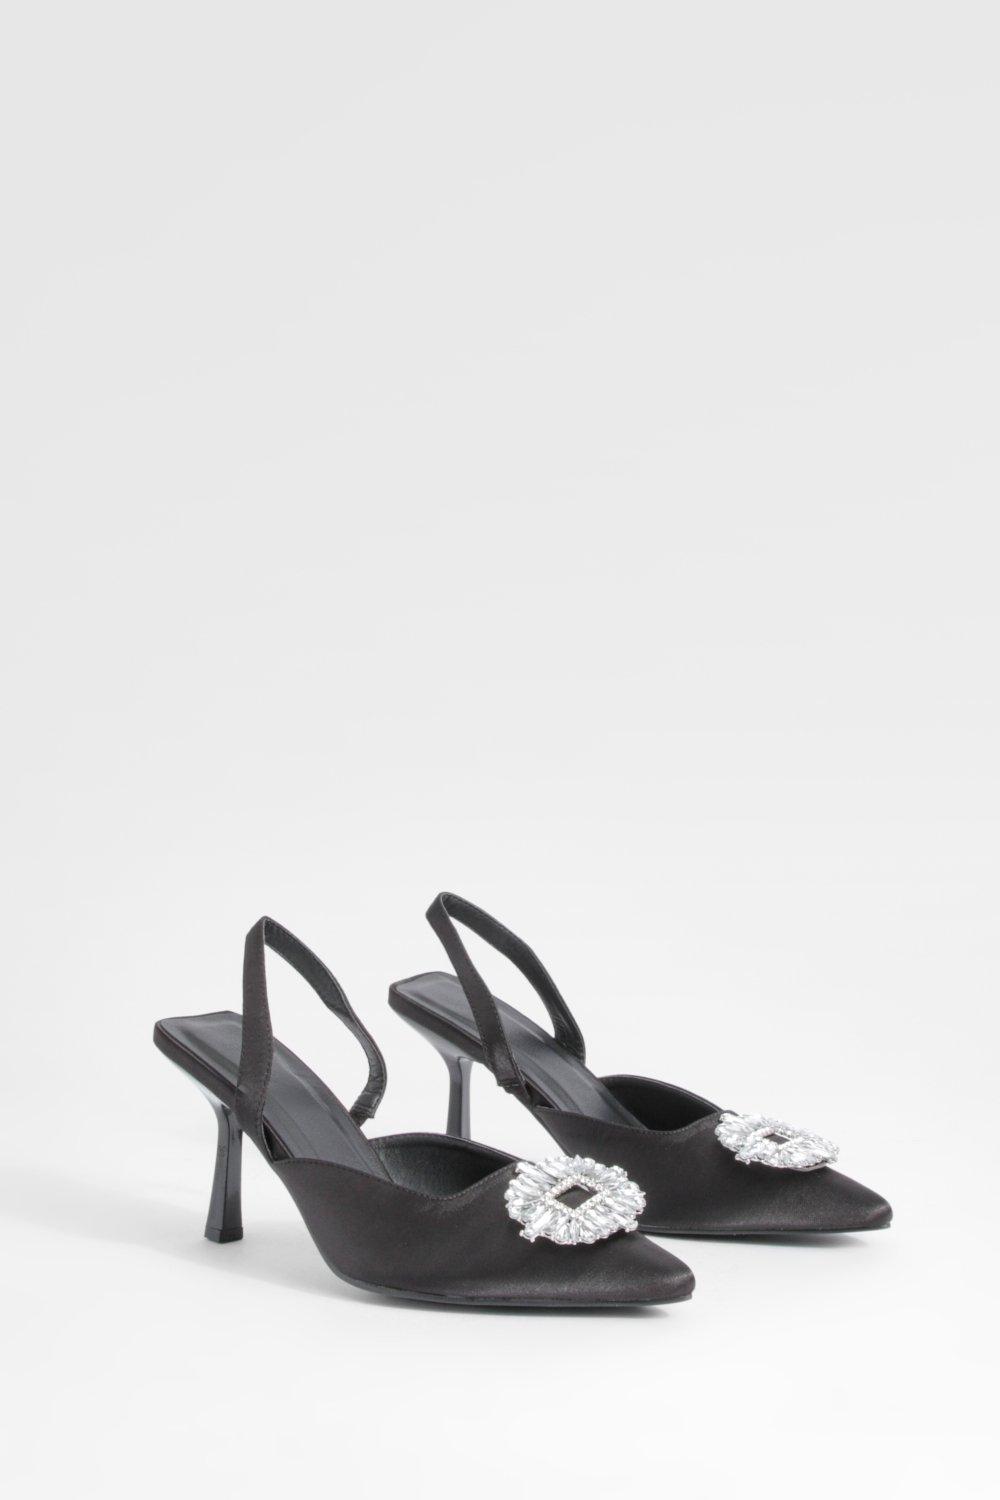 Image of Embellished Satin Court Shoes, Nero